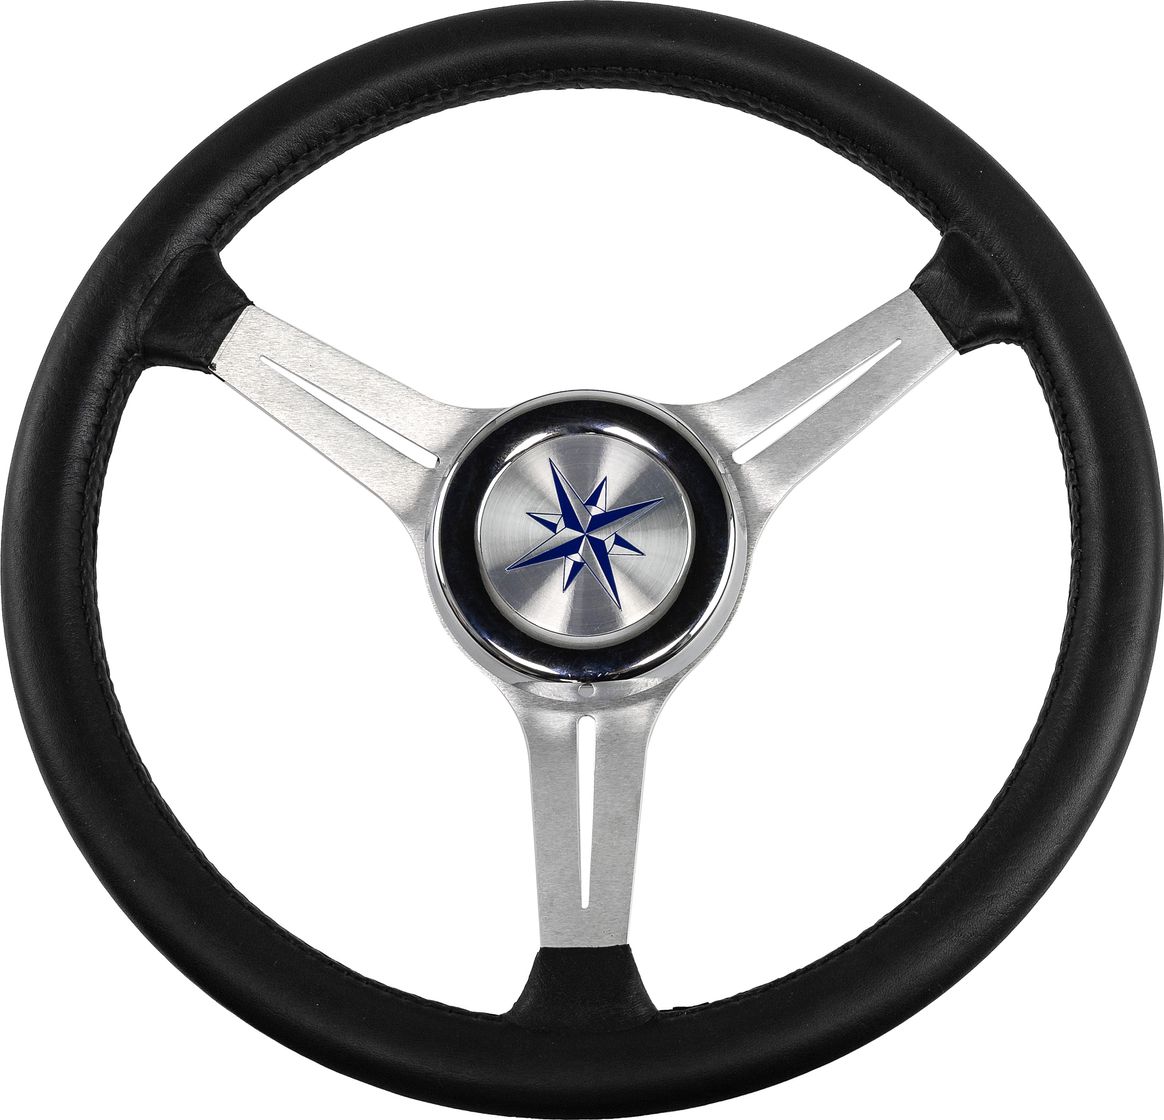 Рулевое колесо LYRA обод черный, спицы серебряные д. 370 мм VN137003-01 рулевое колесо elba sport обод спицы серебряные д 320 мм vn13321 01